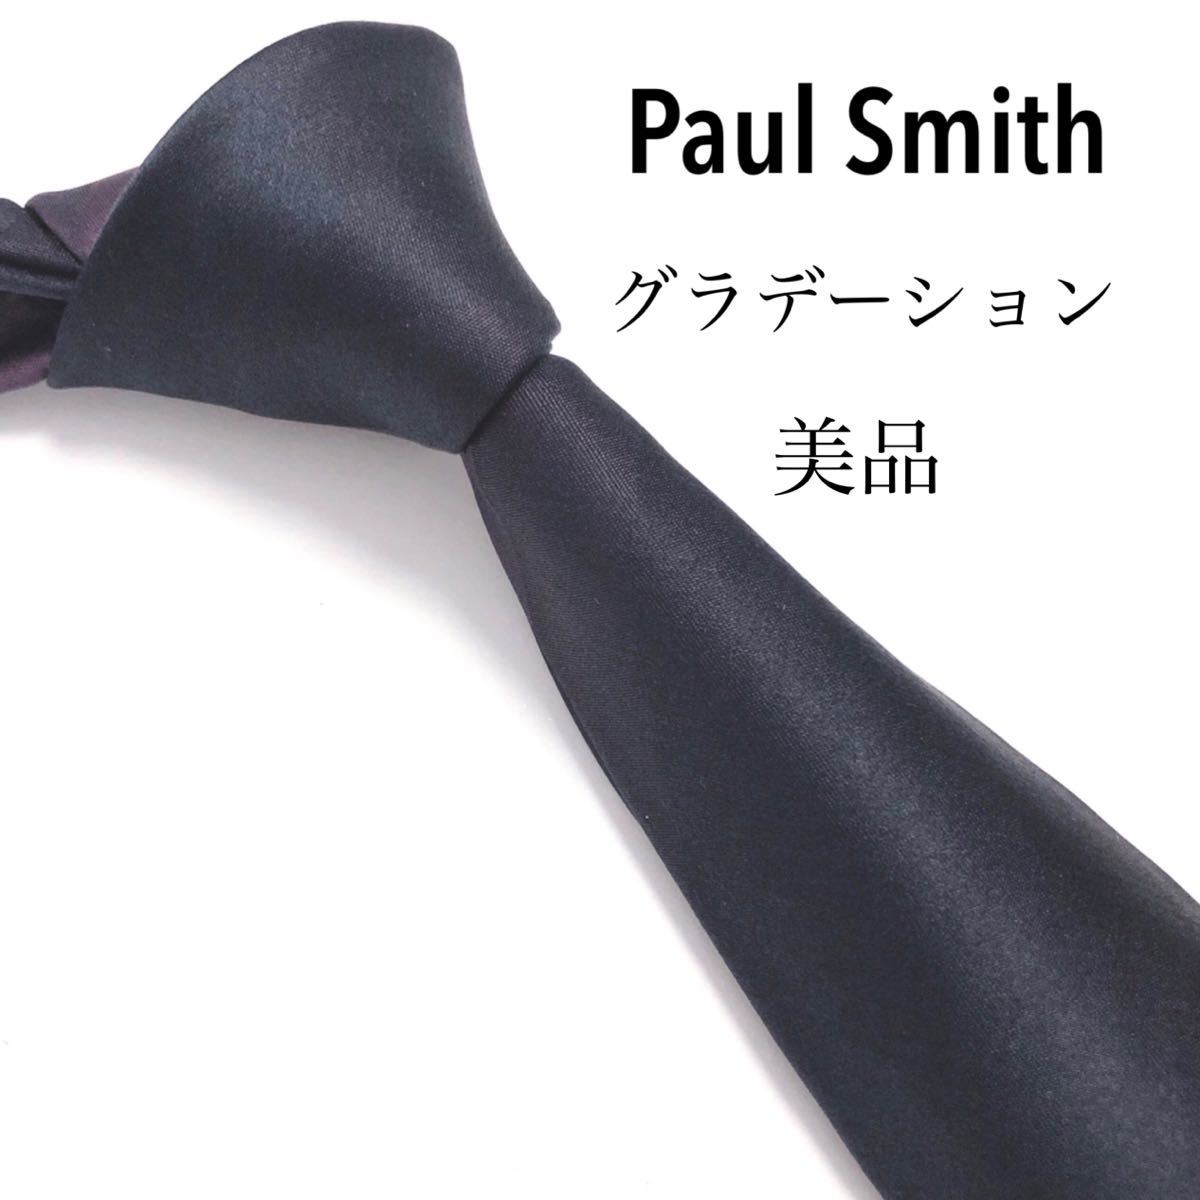 Paul Smith ポールスミス 美品 ネクタイ 高級シルク 光沢 ストライプ